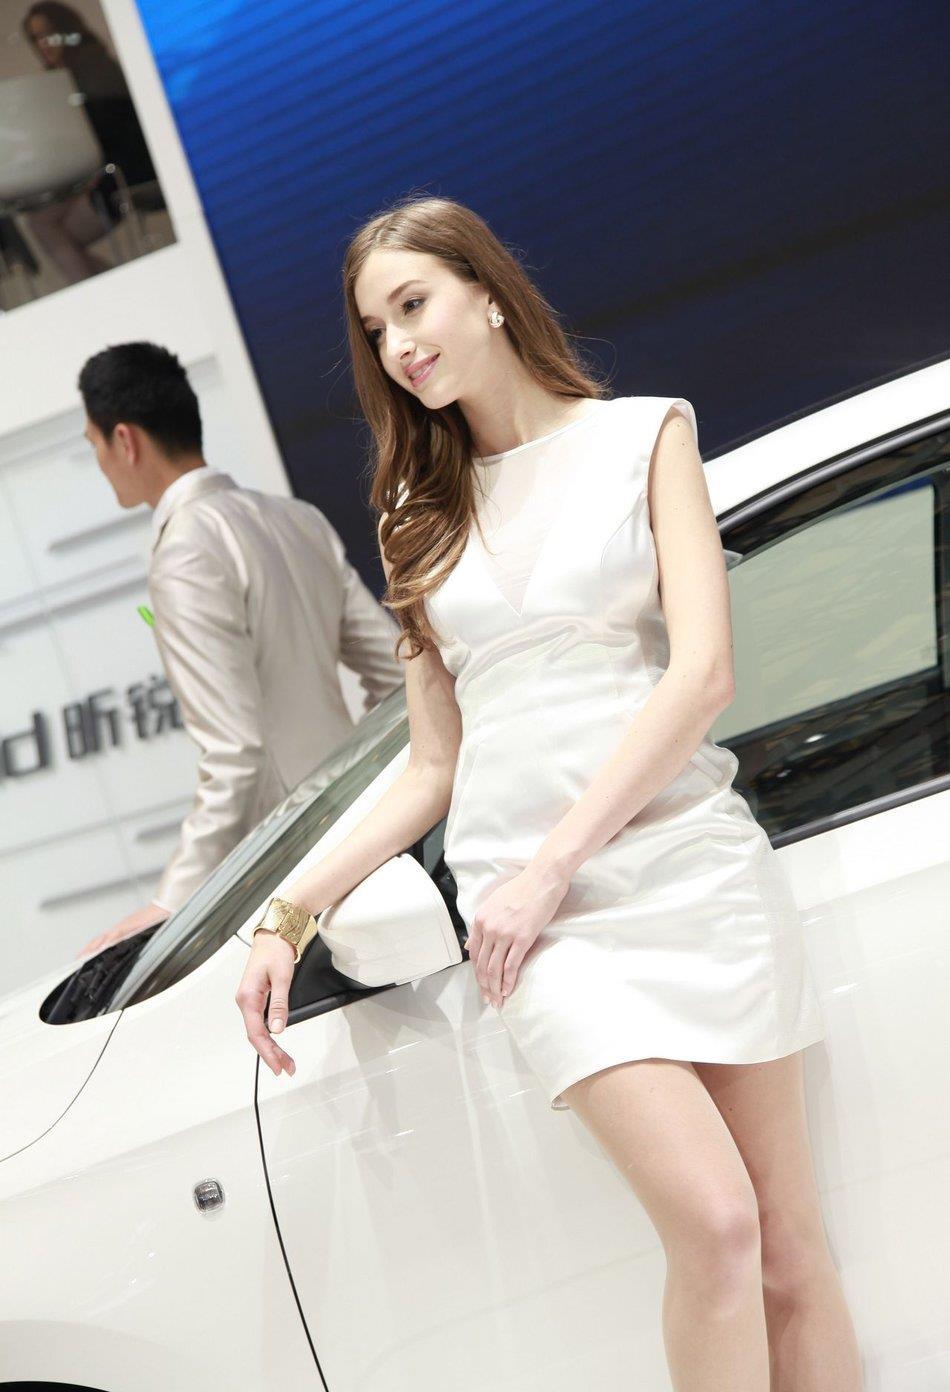 2013上海车展斯柯达展台很有气质的外籍模特,2013上海车展斯柯达展台很有气质的外籍模特